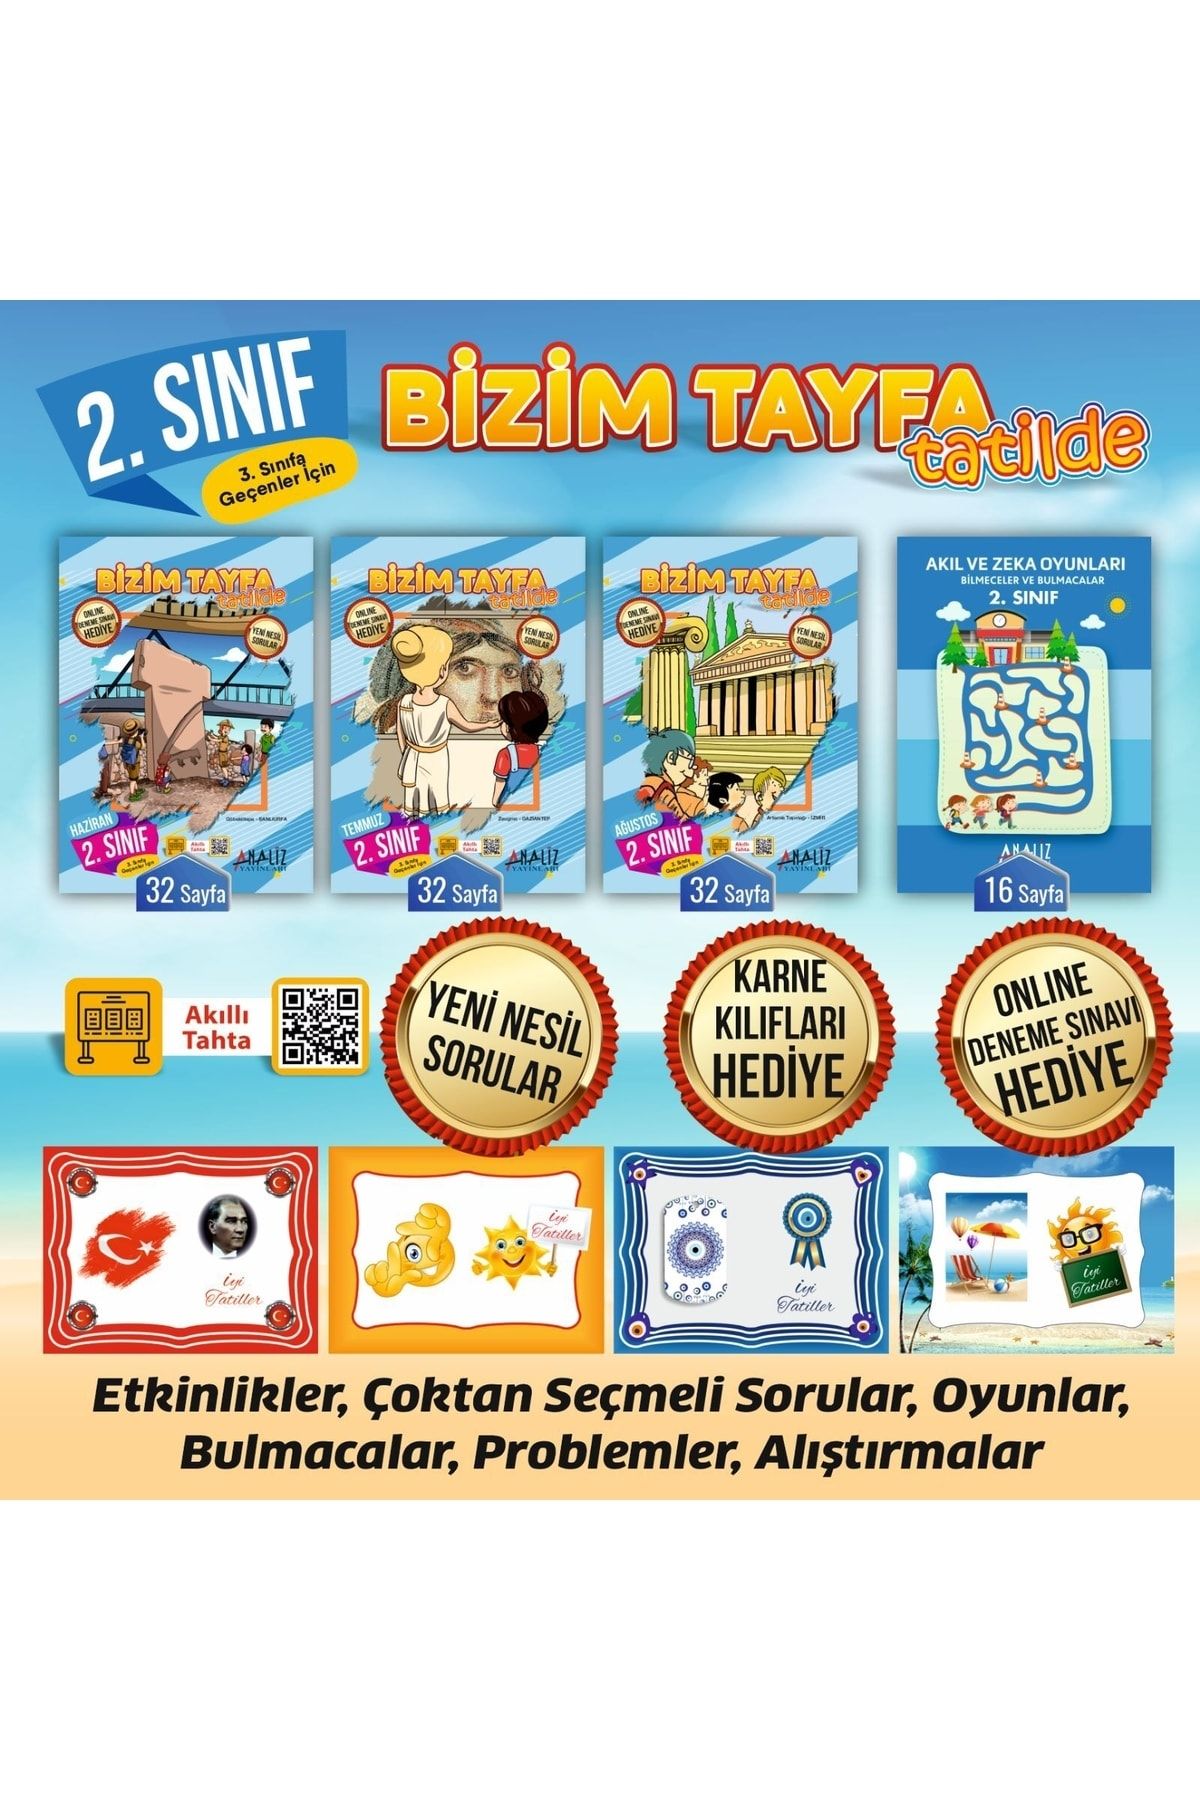 Analiz Yayınları 2.sınıf Bizim Tayfa Tatilde Etkinlik Ve Tatil Kitabı Karne Kılıfı Hediye